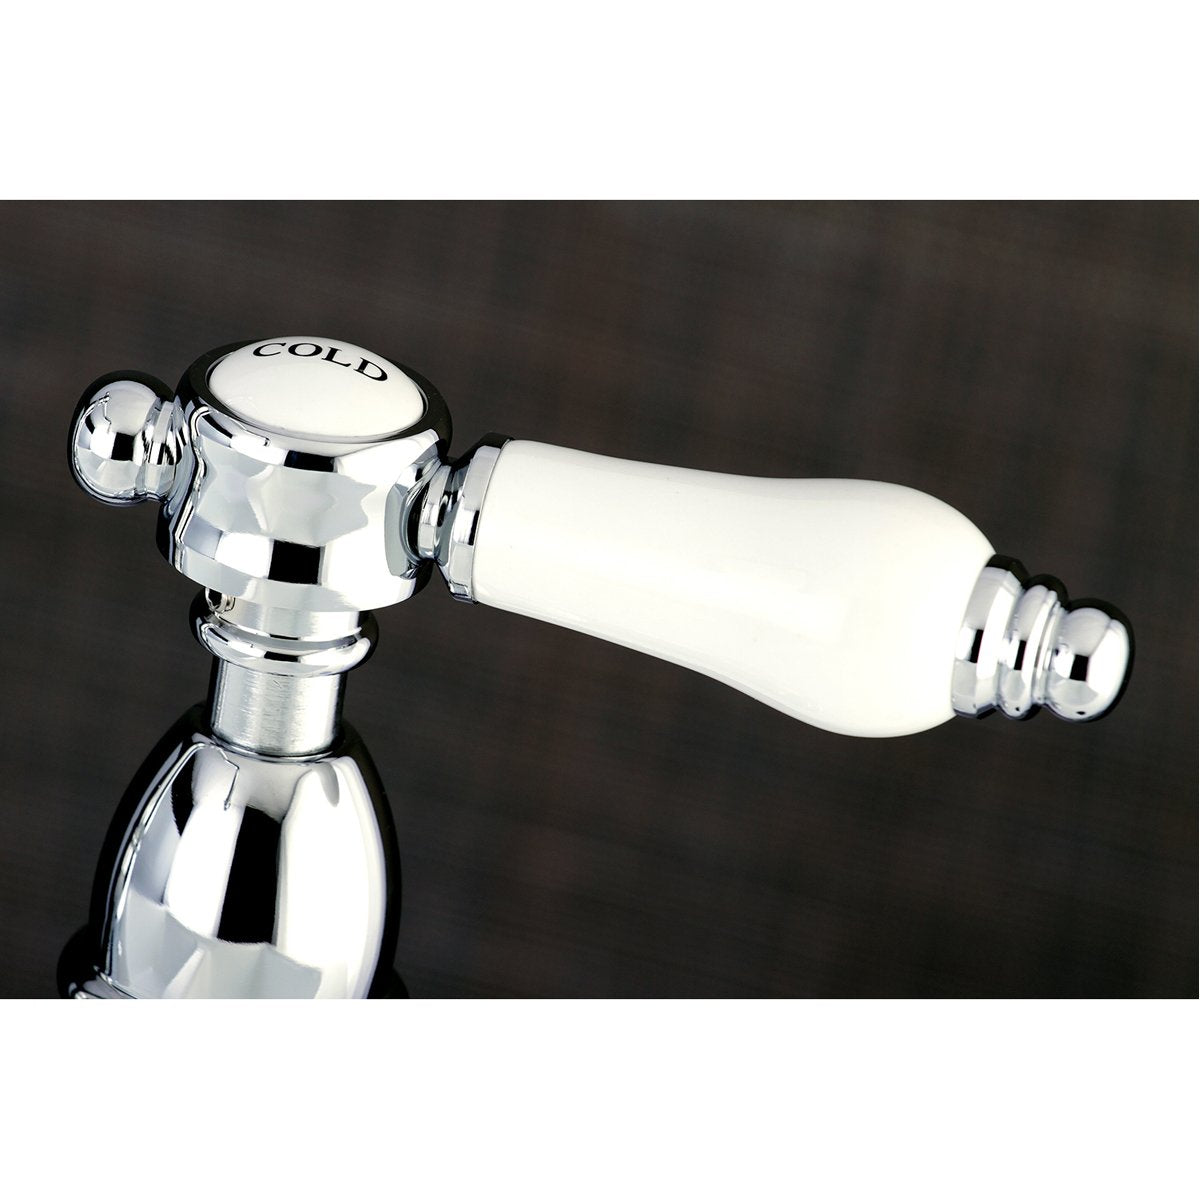 Kingston Brass 8" Centerset Kitchen Faucet Less Sprayer